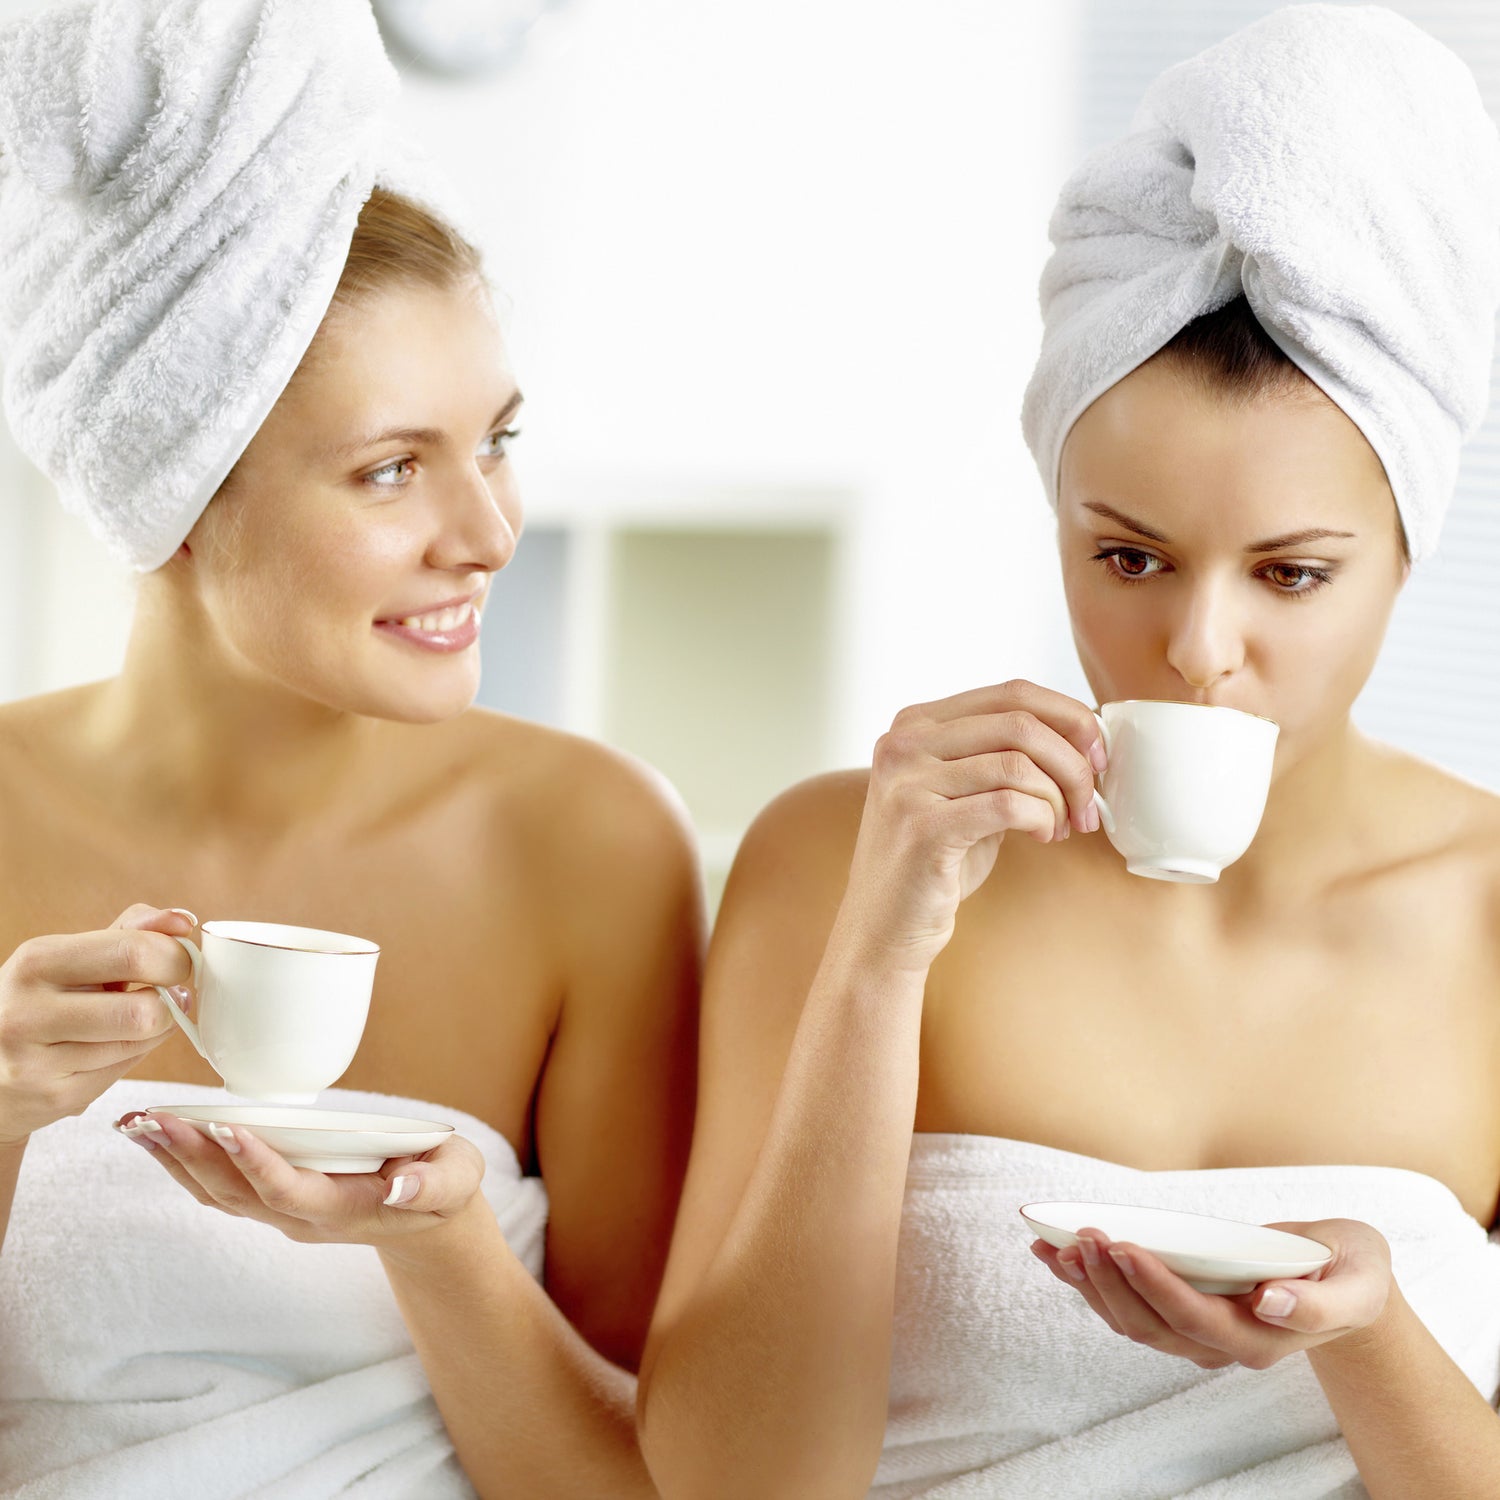 Twee vrouwen drinken gezellig een kopje koffie tijdens onze Girls’ Party. Zowel hun lichaam als haren zijn gewikkeld in een handdoek.